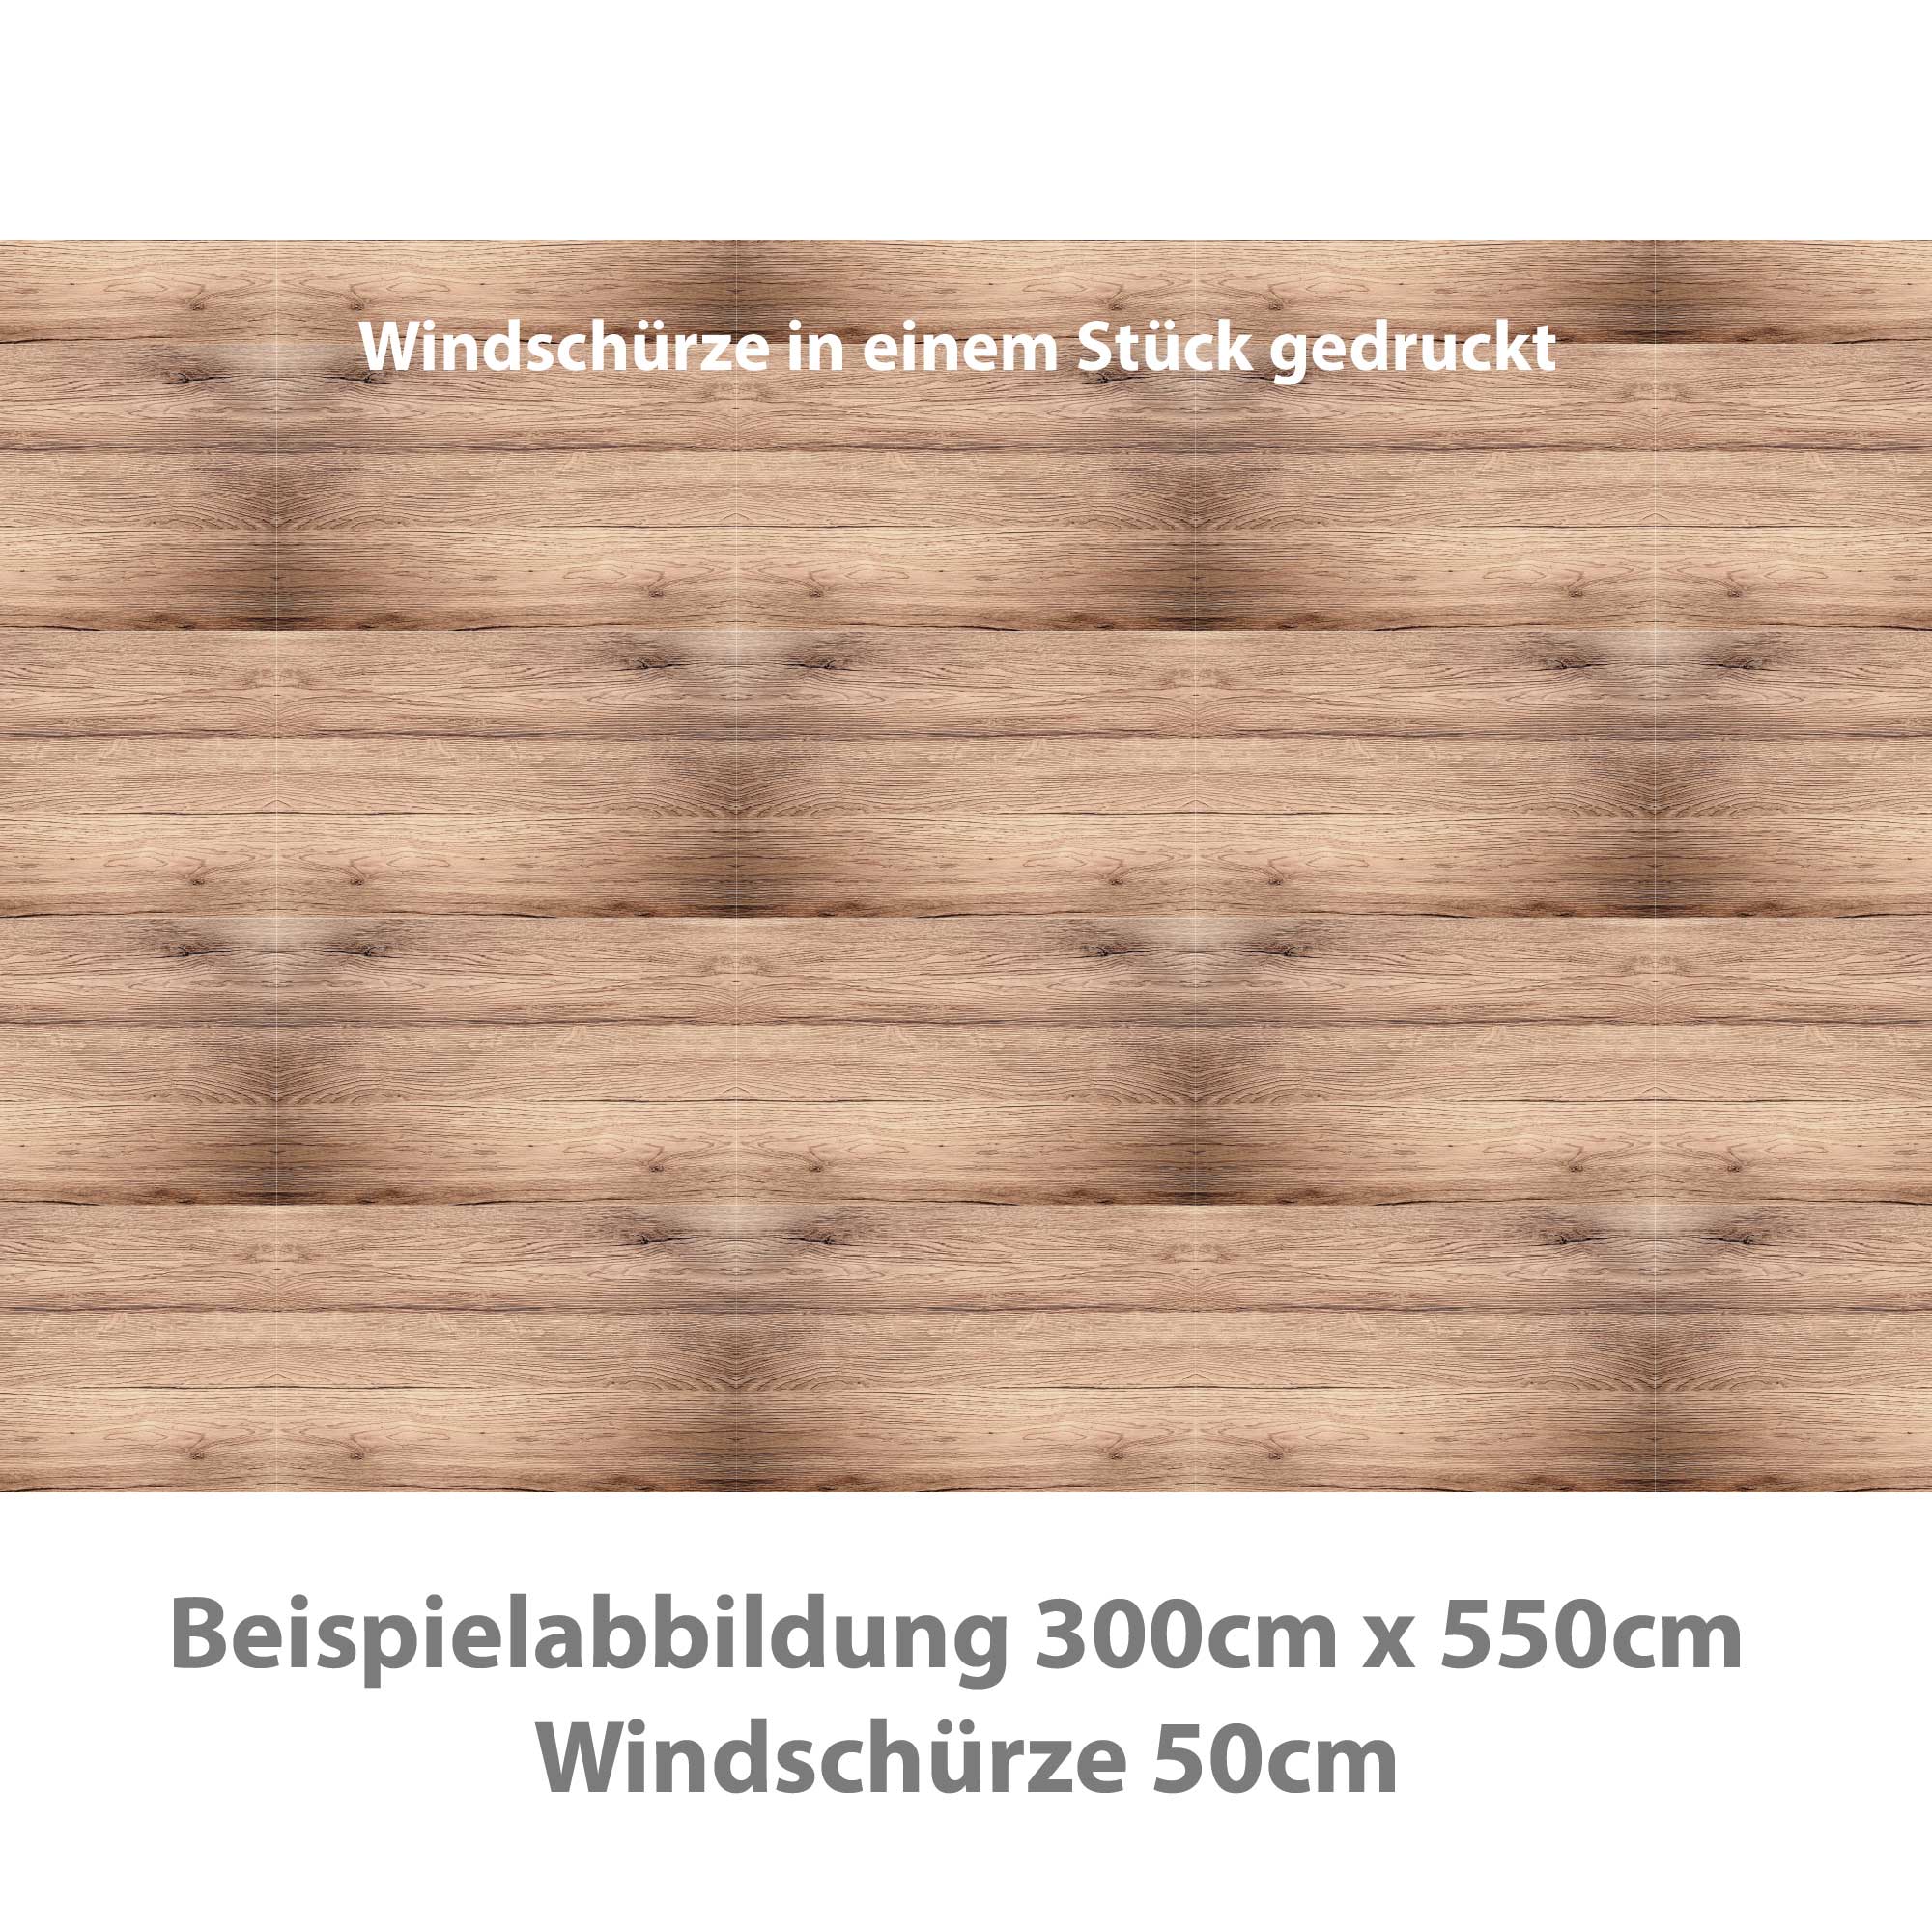 VorzeltTeppich - Holzdeck - 2,5m x 5,3 m - Restposten